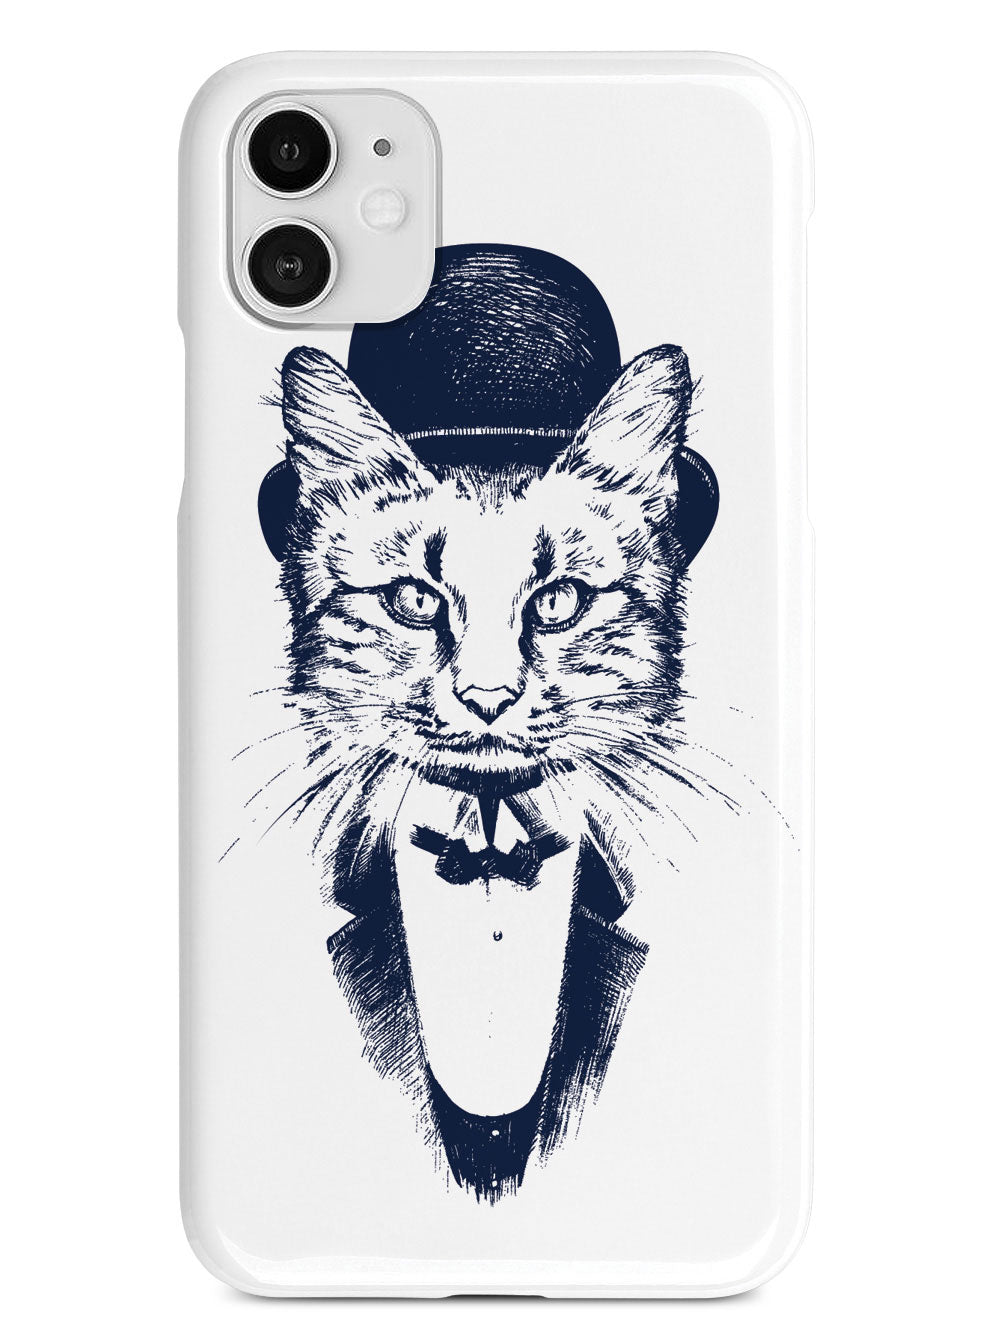 Sir Fancy Cat Case